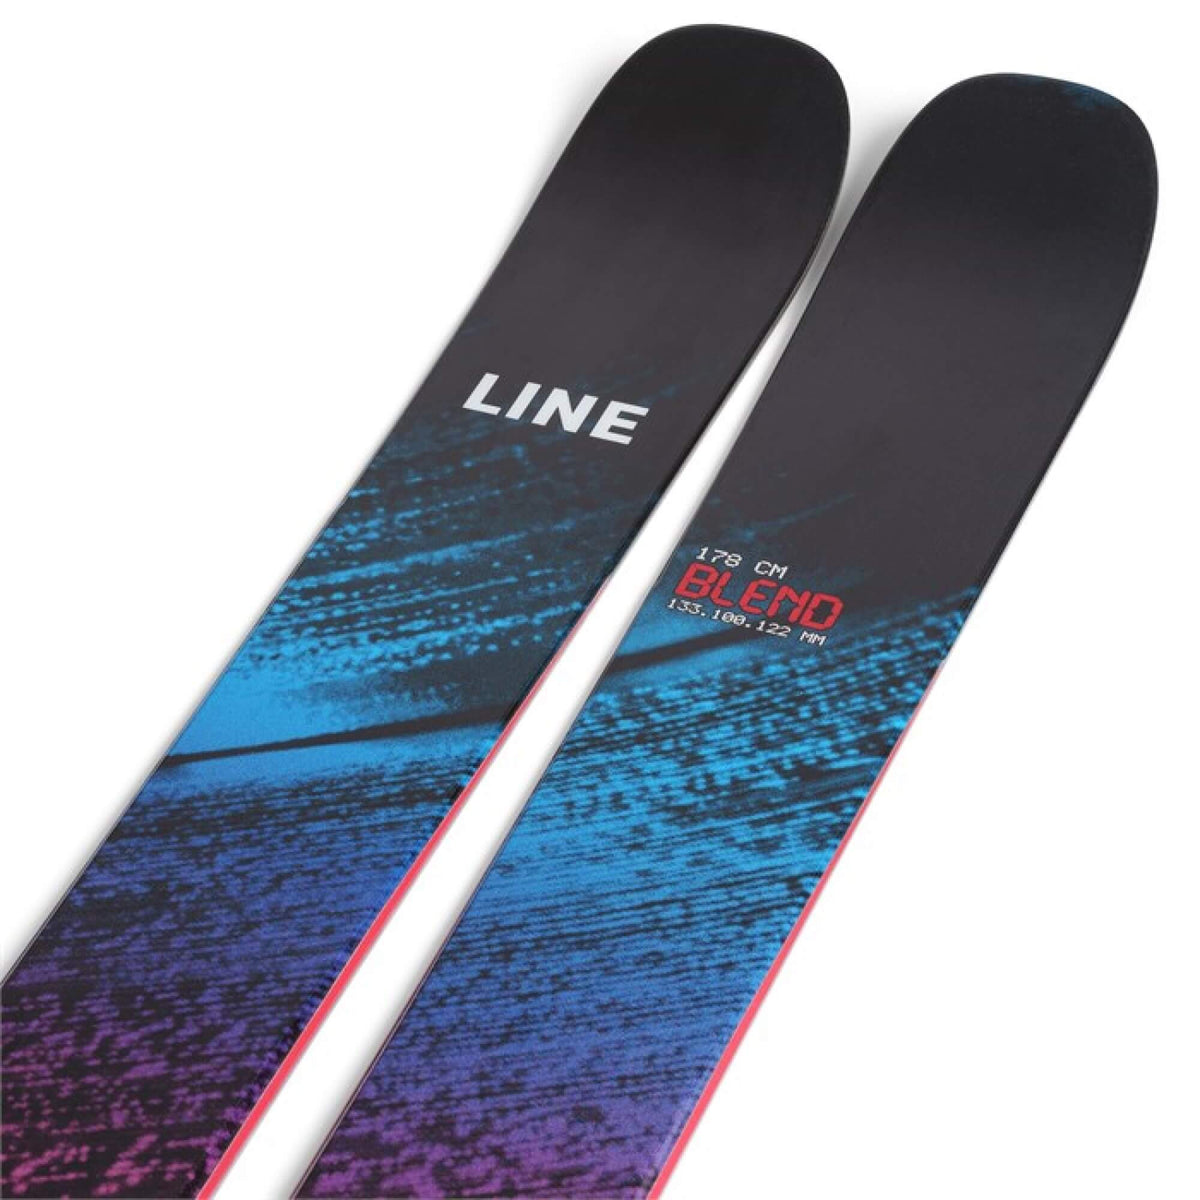 Les types de skis alpins : comment choisir? – Oberson